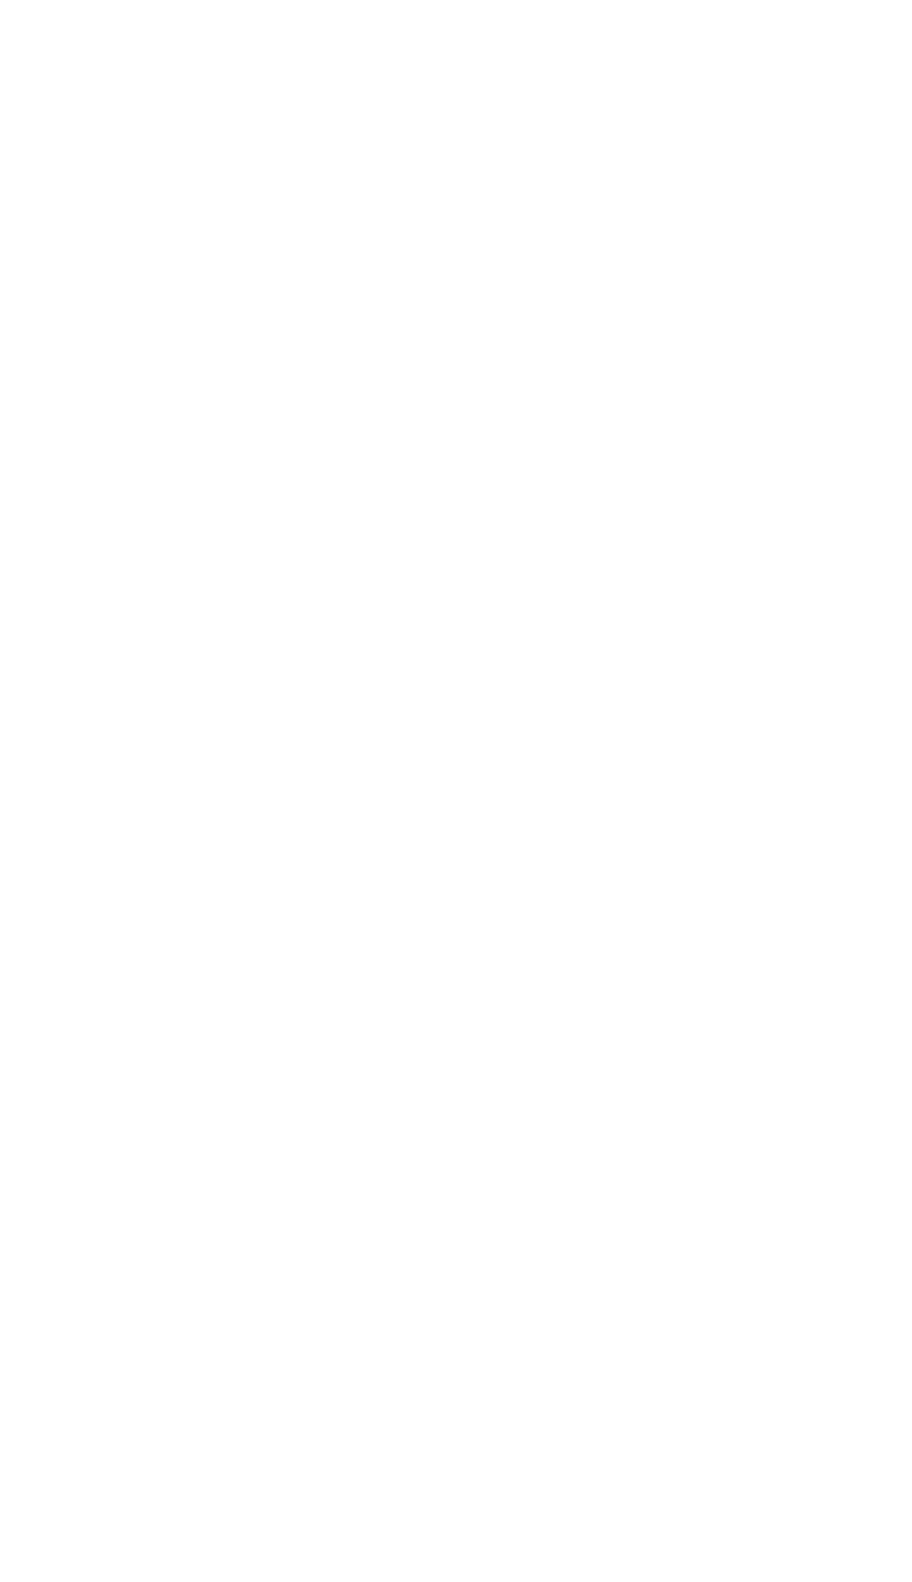 UnitedHealth logo pour fonds sombres (PNG transparent)